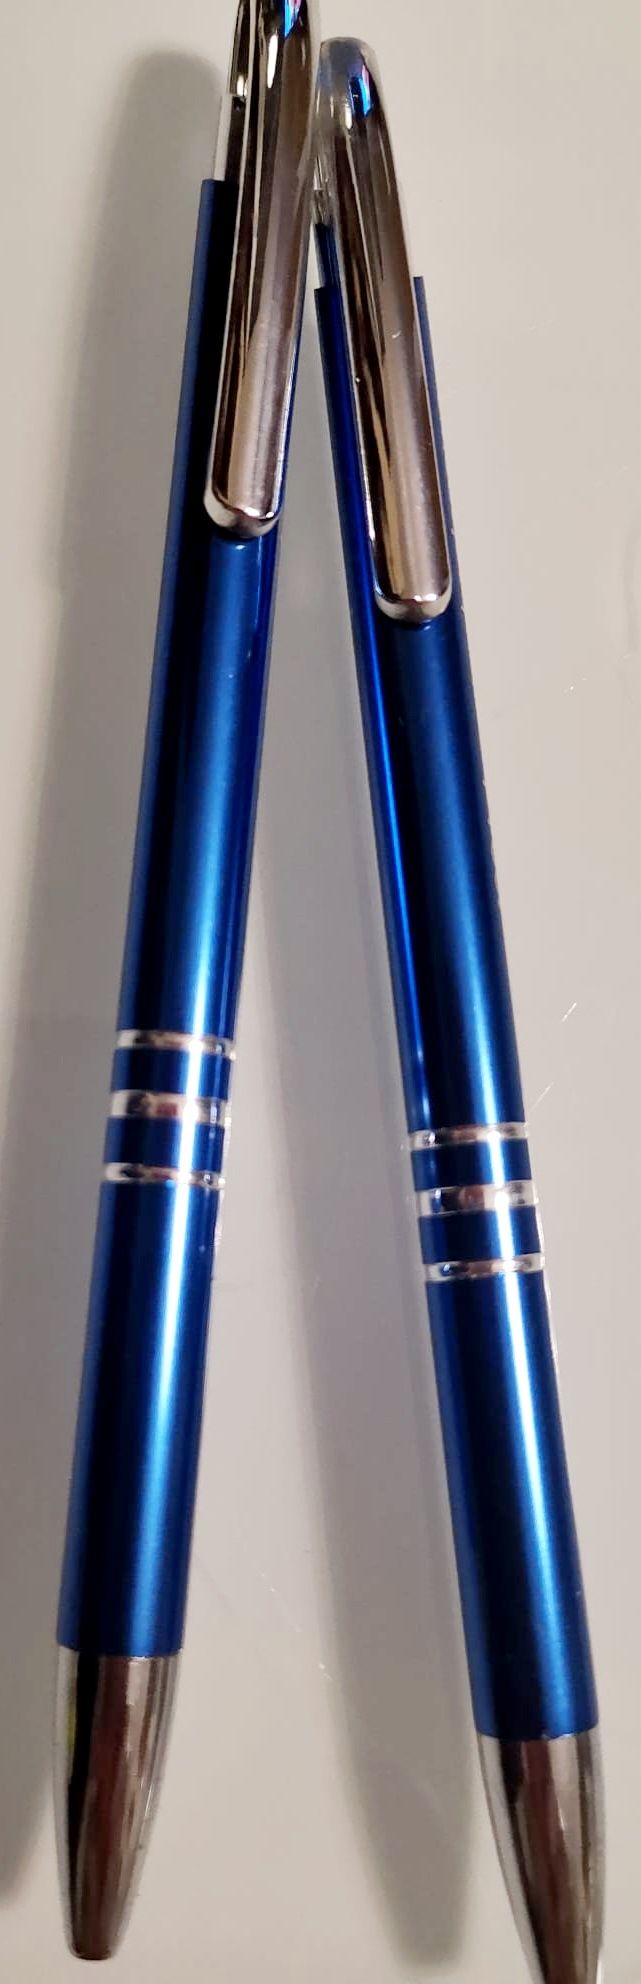 Nowe dwa niebieskie długopisy w pudełeczku, idealne na prezent !!!